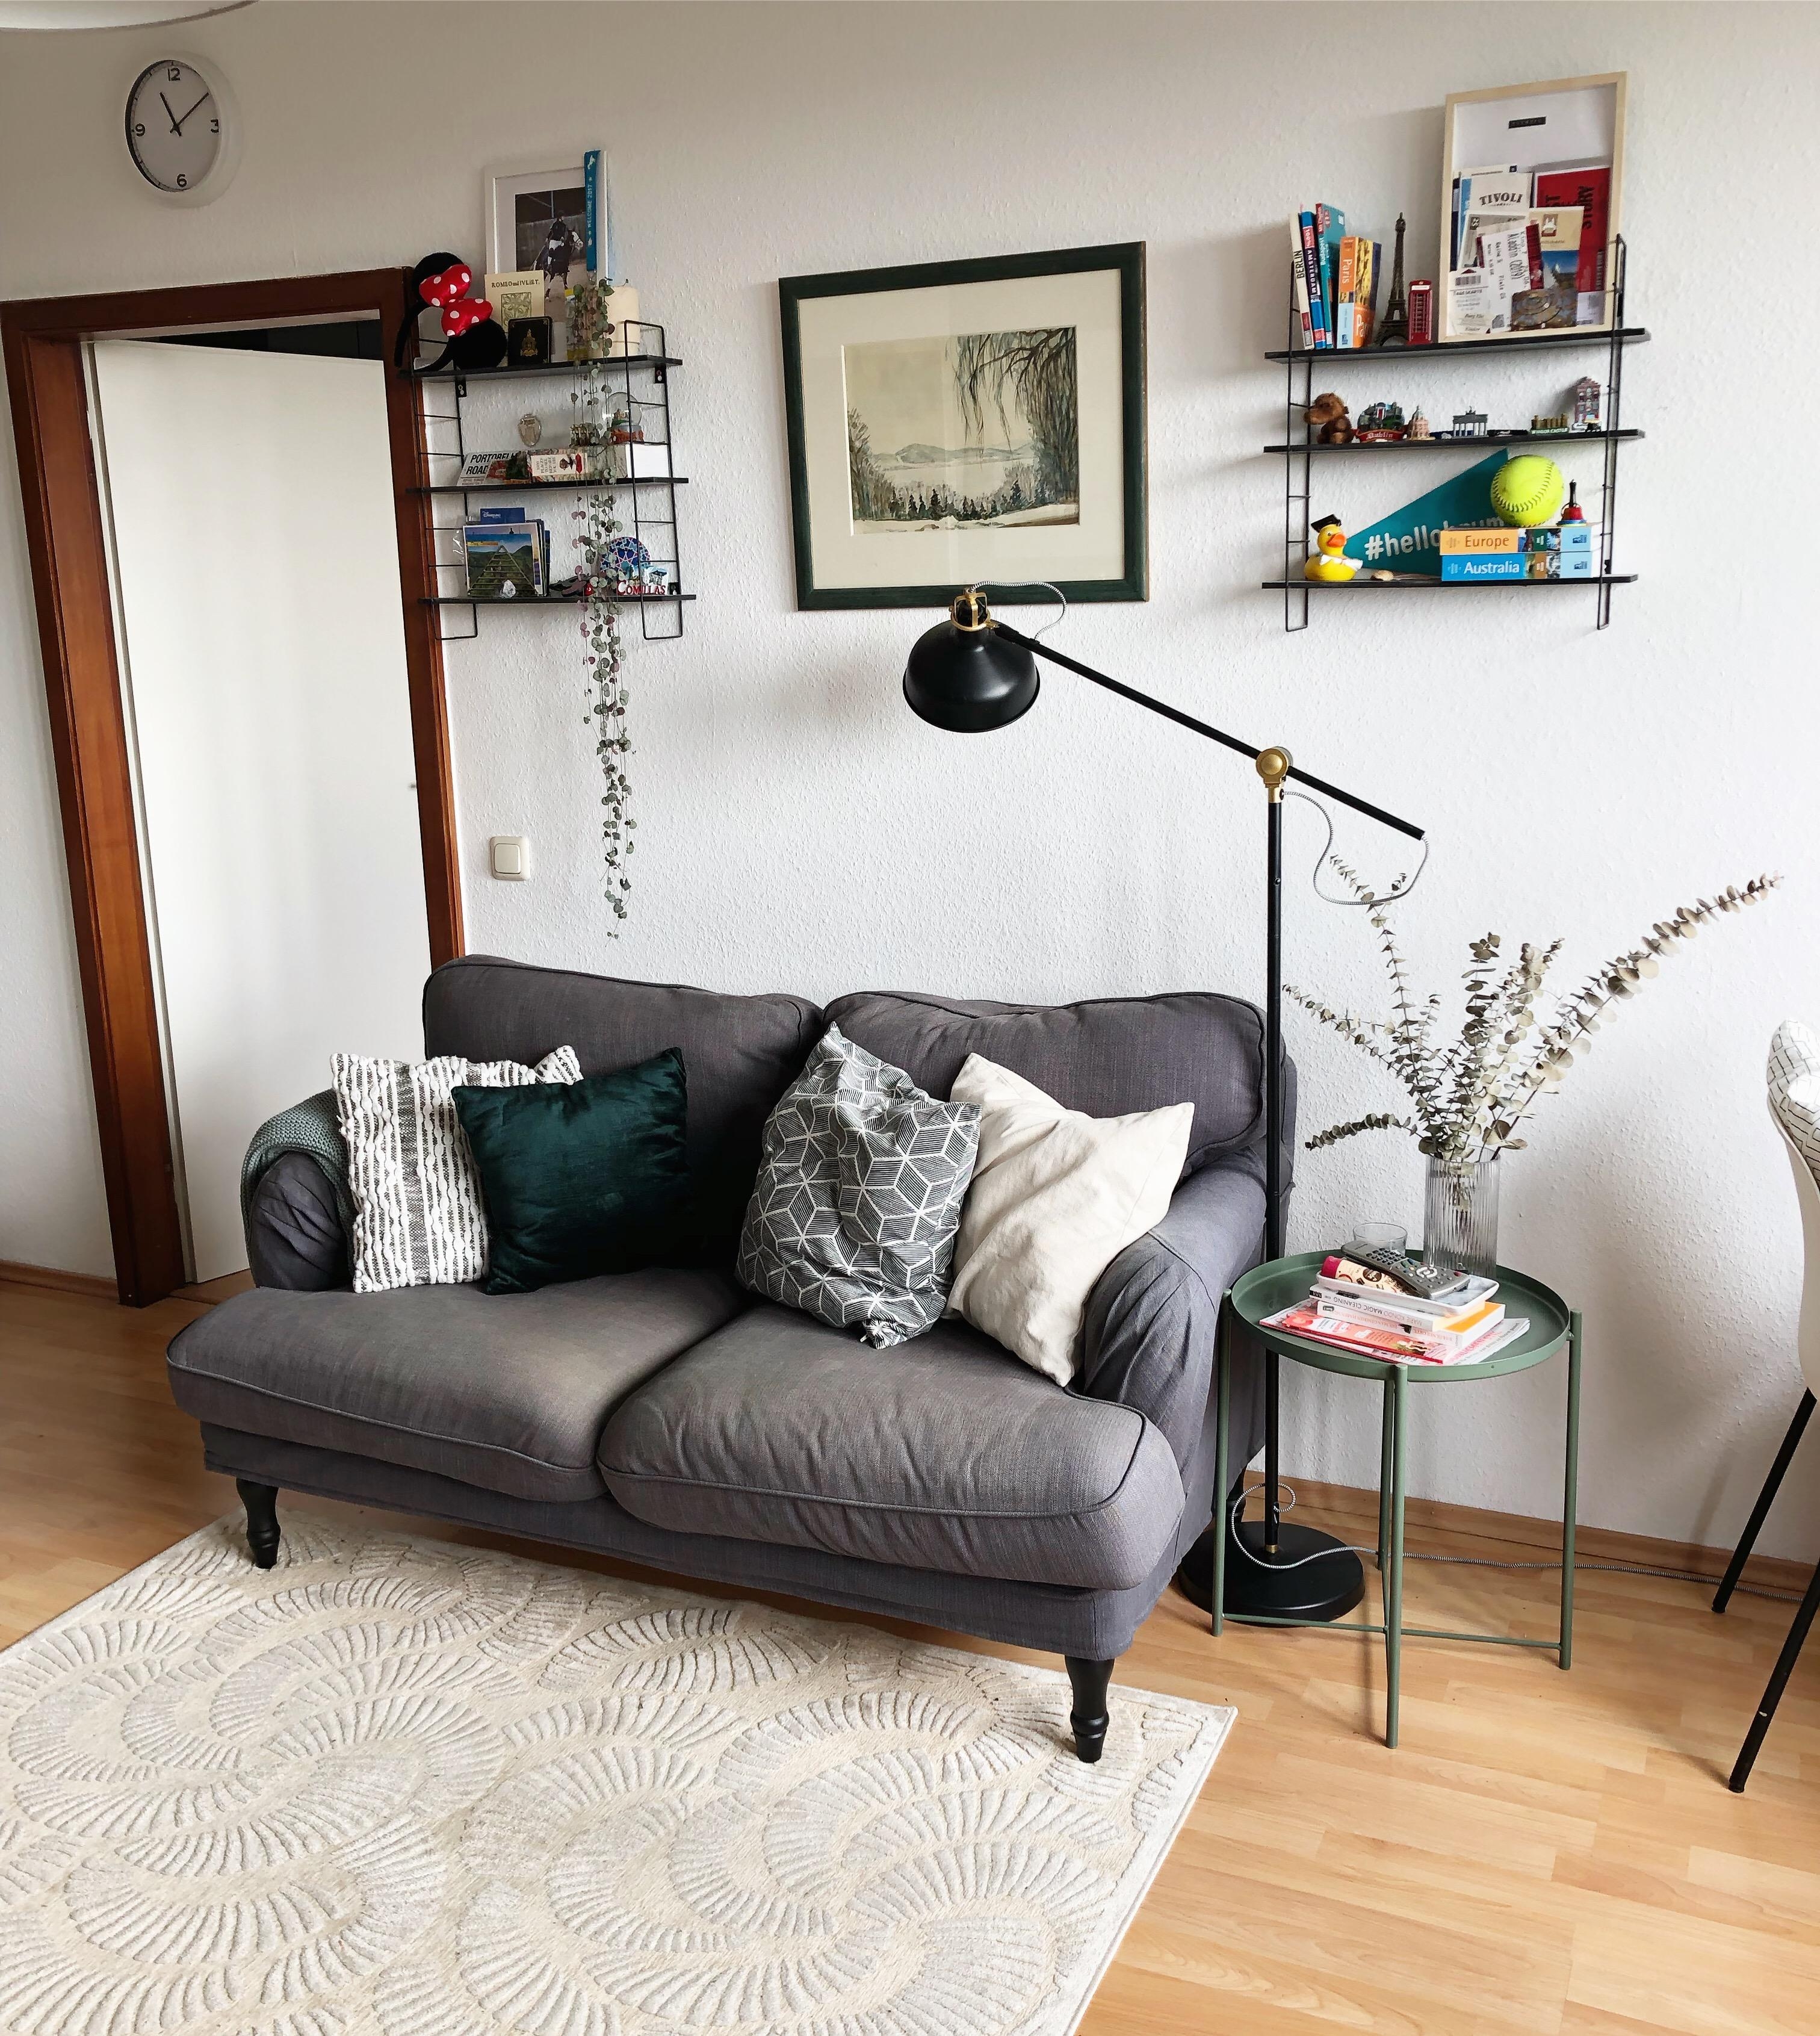 #scandistyle #wohnzimmer #livingroom #darkgreen #minimalism #neutrals #sofa